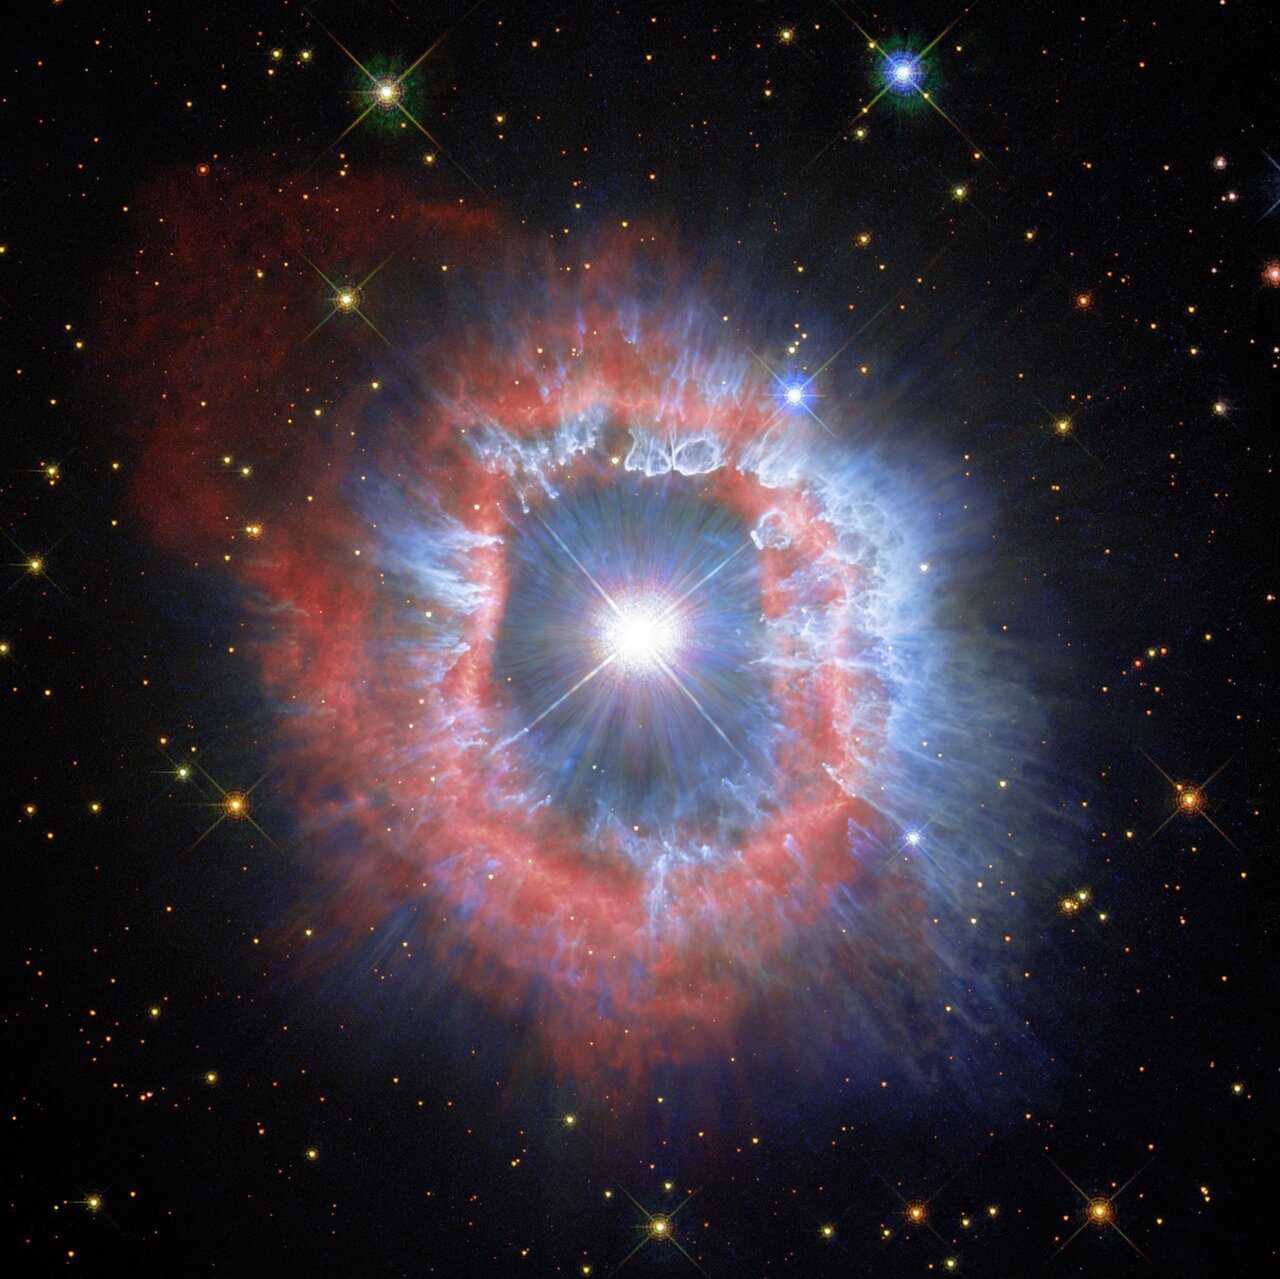 Апрельское изображение в календаре ЕКА / Хаббла на 2022 год показывает «последние моменты» массивной звезды AG Carinae. Предоставлено: ЕКА / Хаббл и НАСА, А. Нота, К. Бритт.